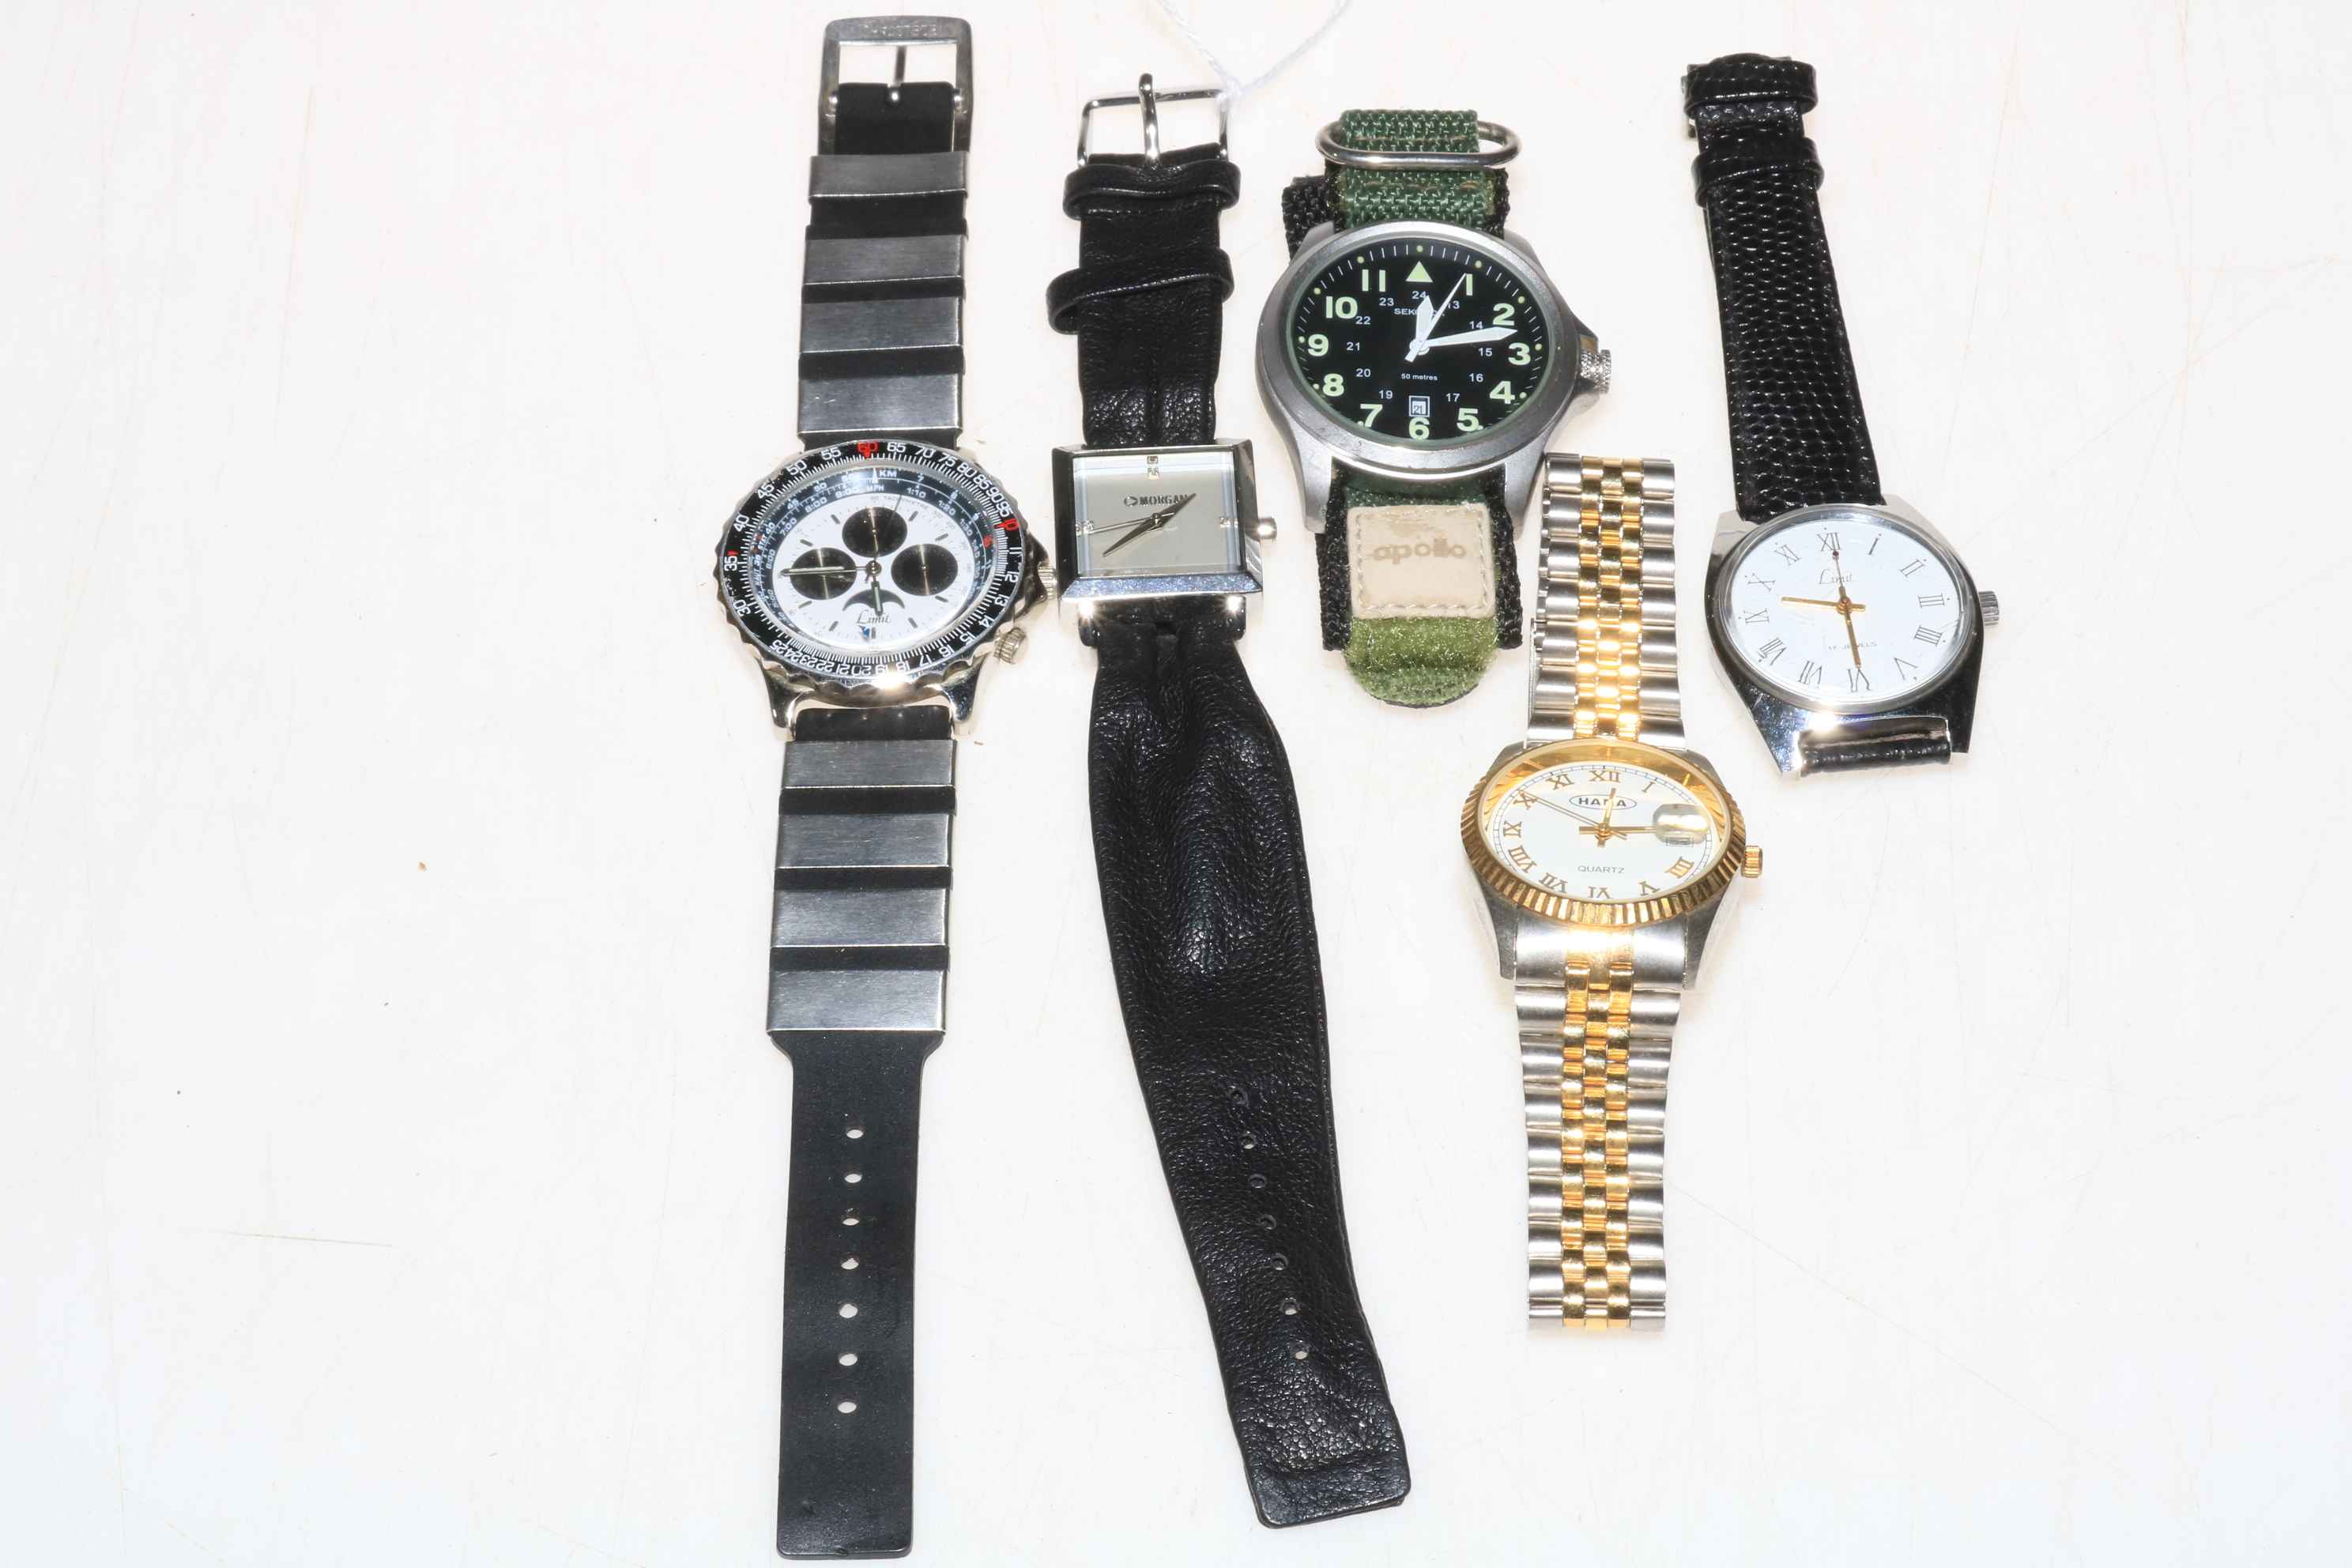 Five Gents wristwatches including Sekonda, Limit, etc.